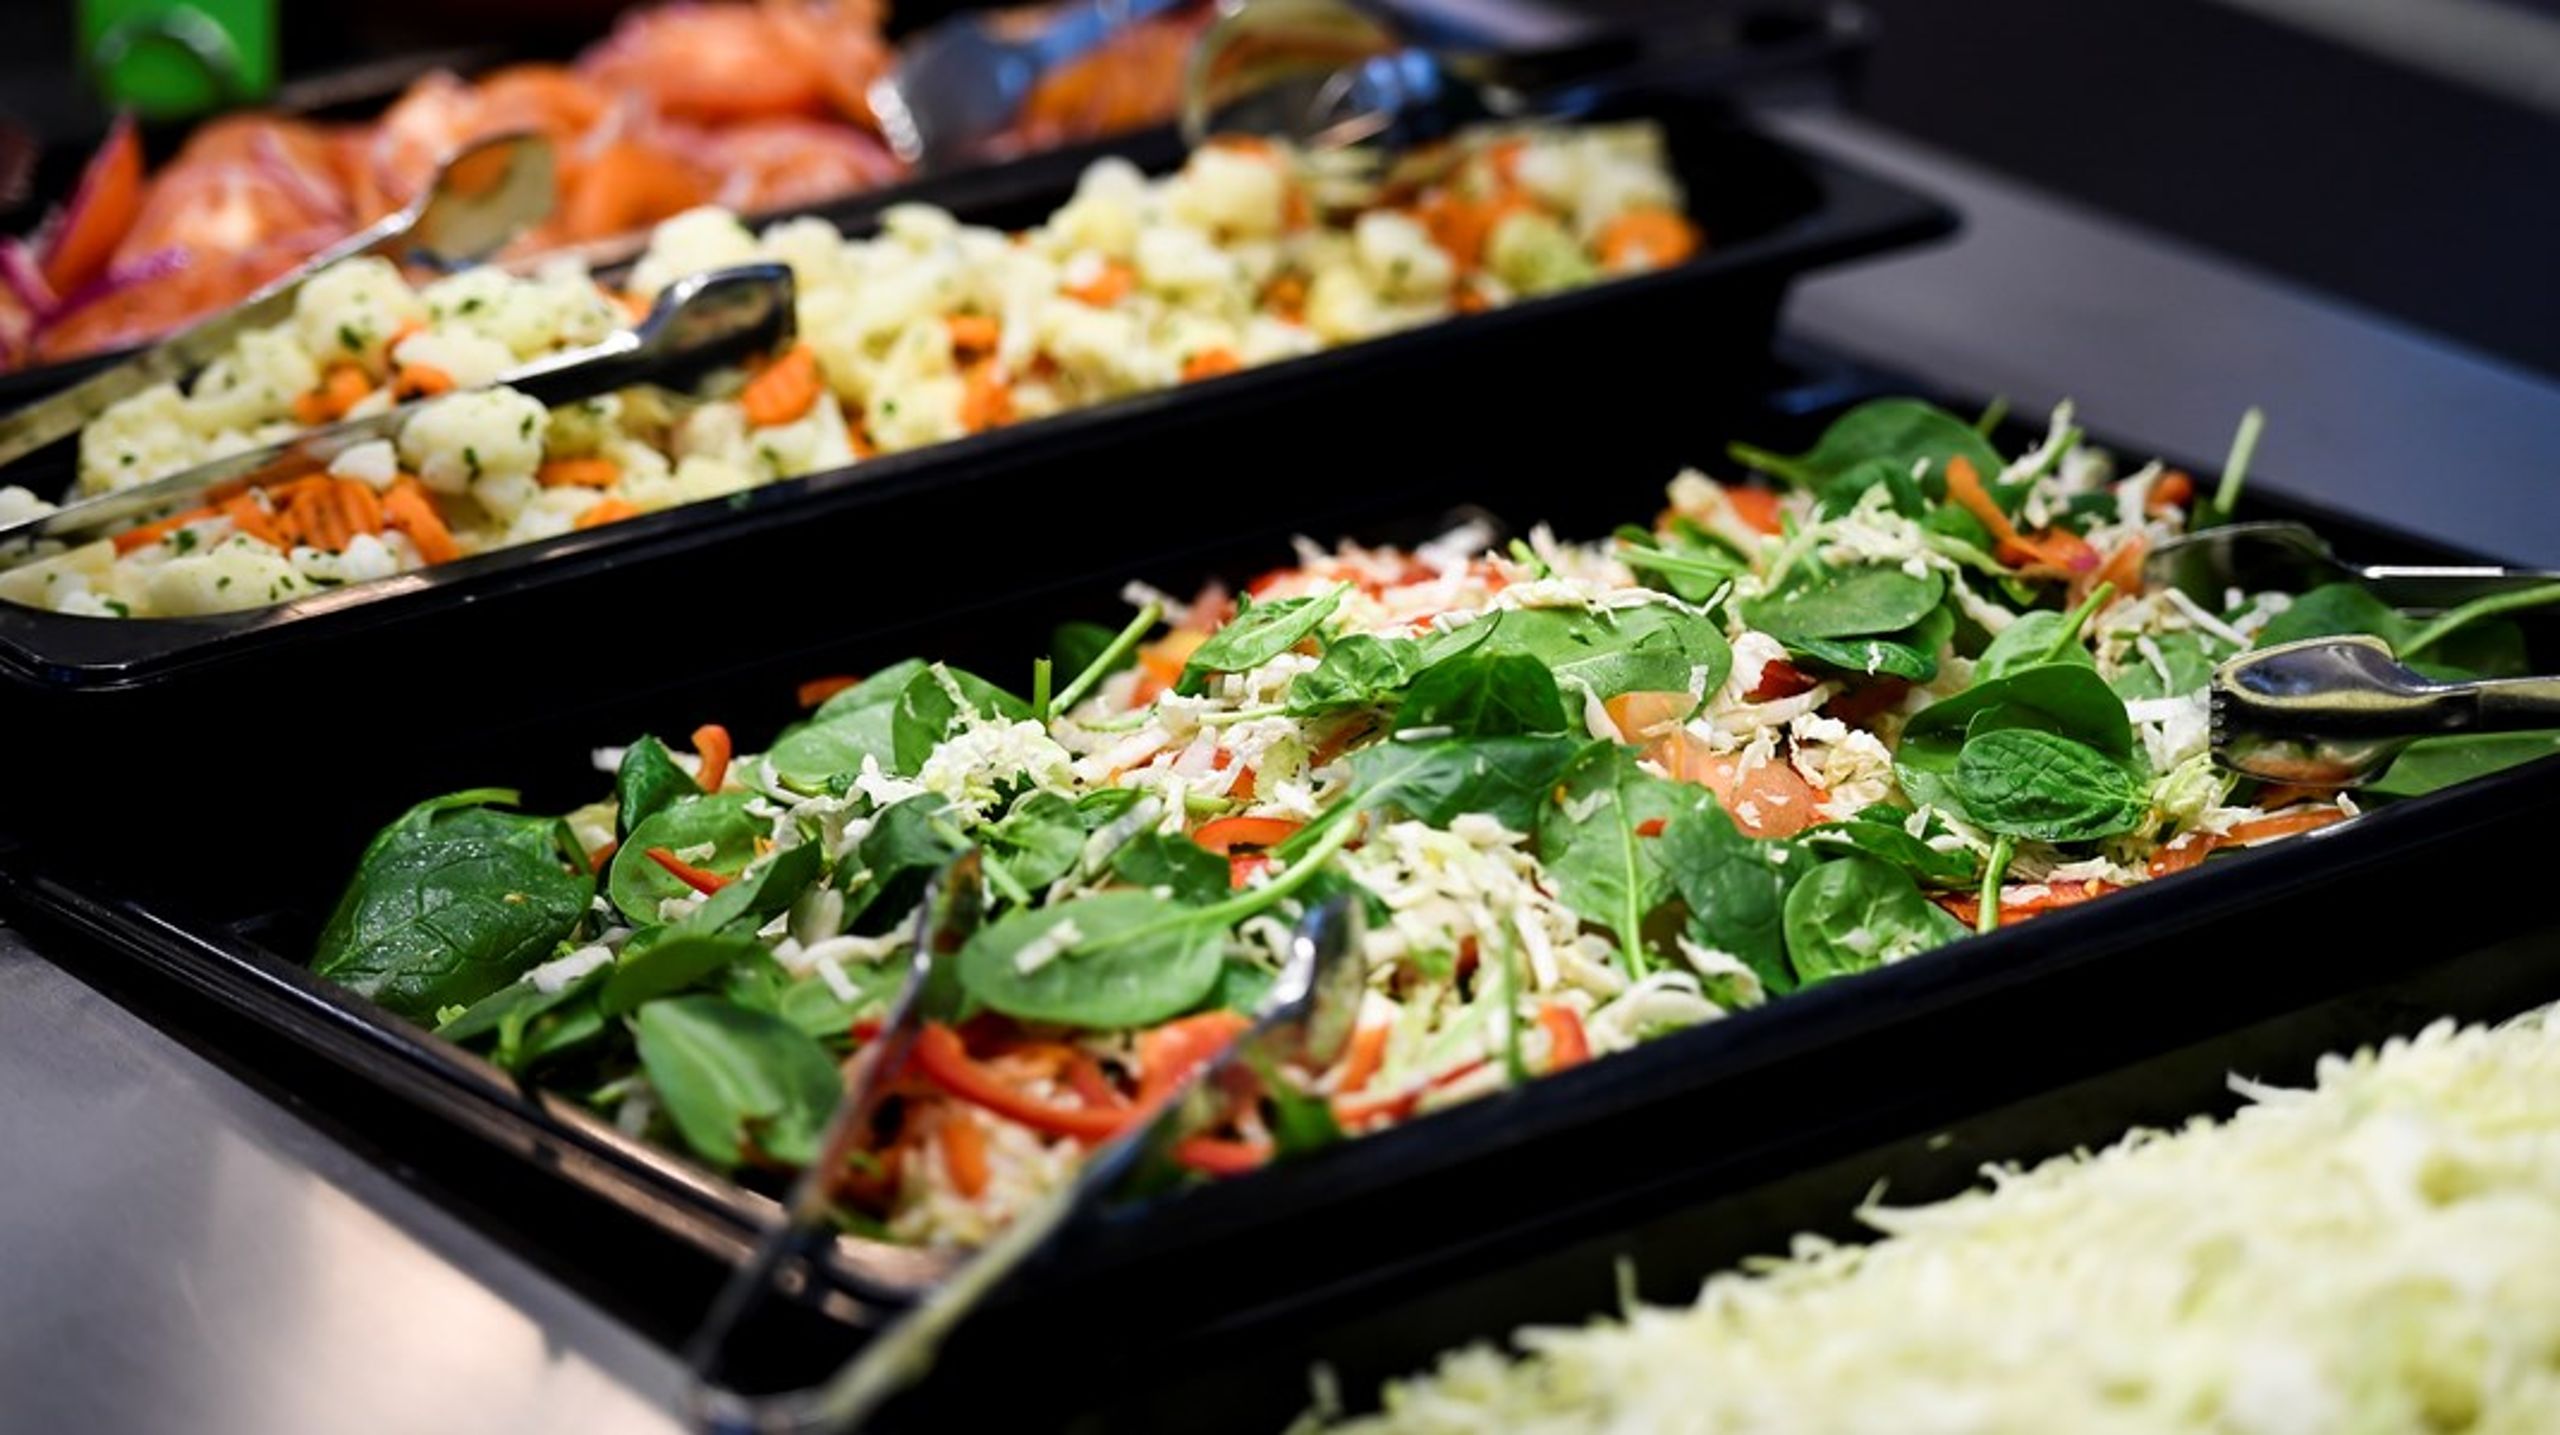 ”Med tre miljoner mål mat varje dag är den offentliga måltiden en viktig del av Matsverige.”